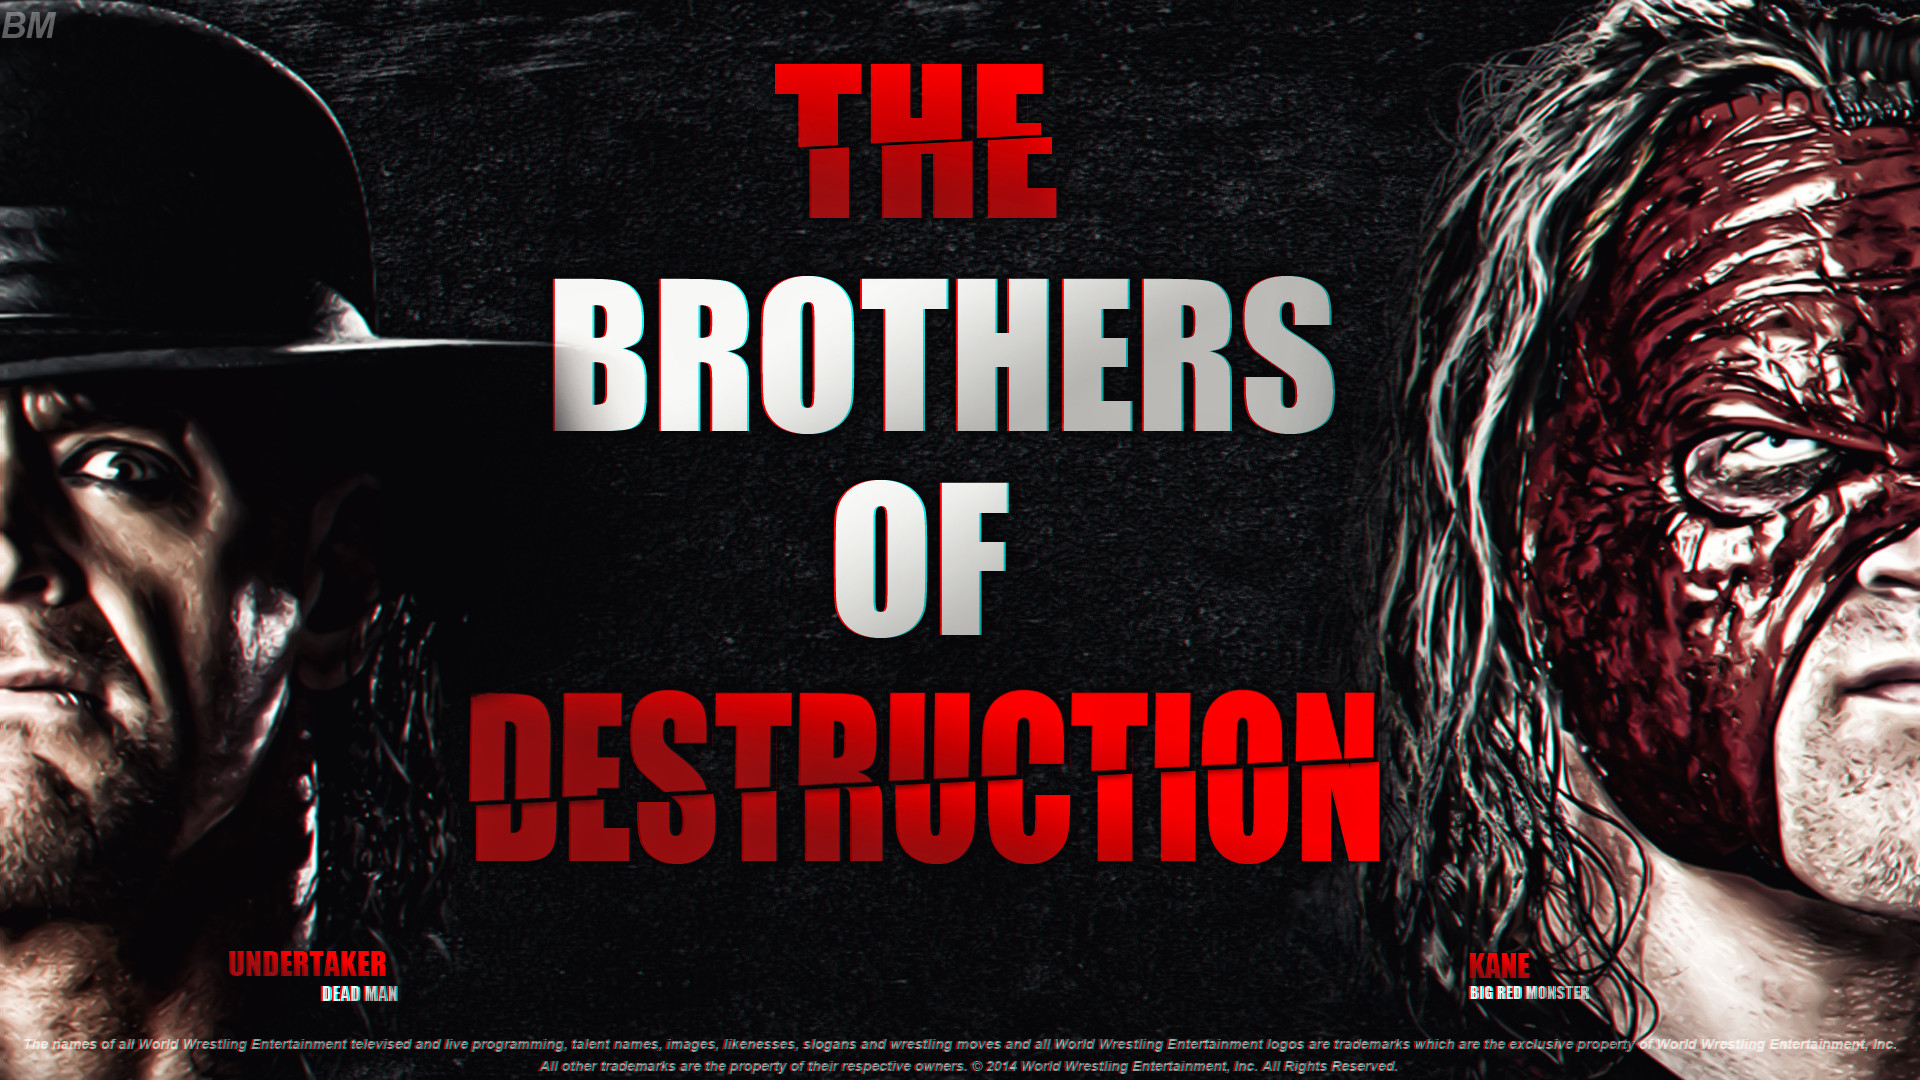 1920x1080 Brothers Of Destruction | WWE HD | By BM Desugner by BM-Designer on .